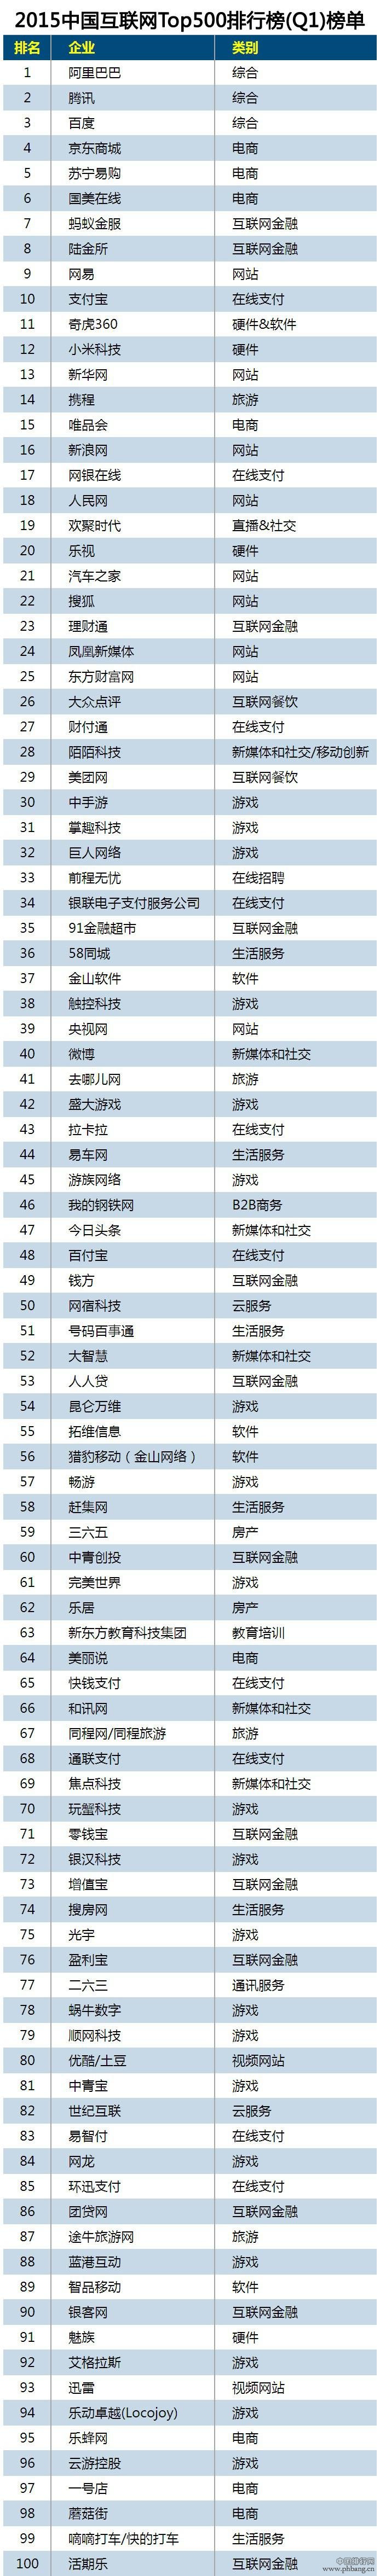 2015年Q1中国互联网企业Top500排行榜全榜单